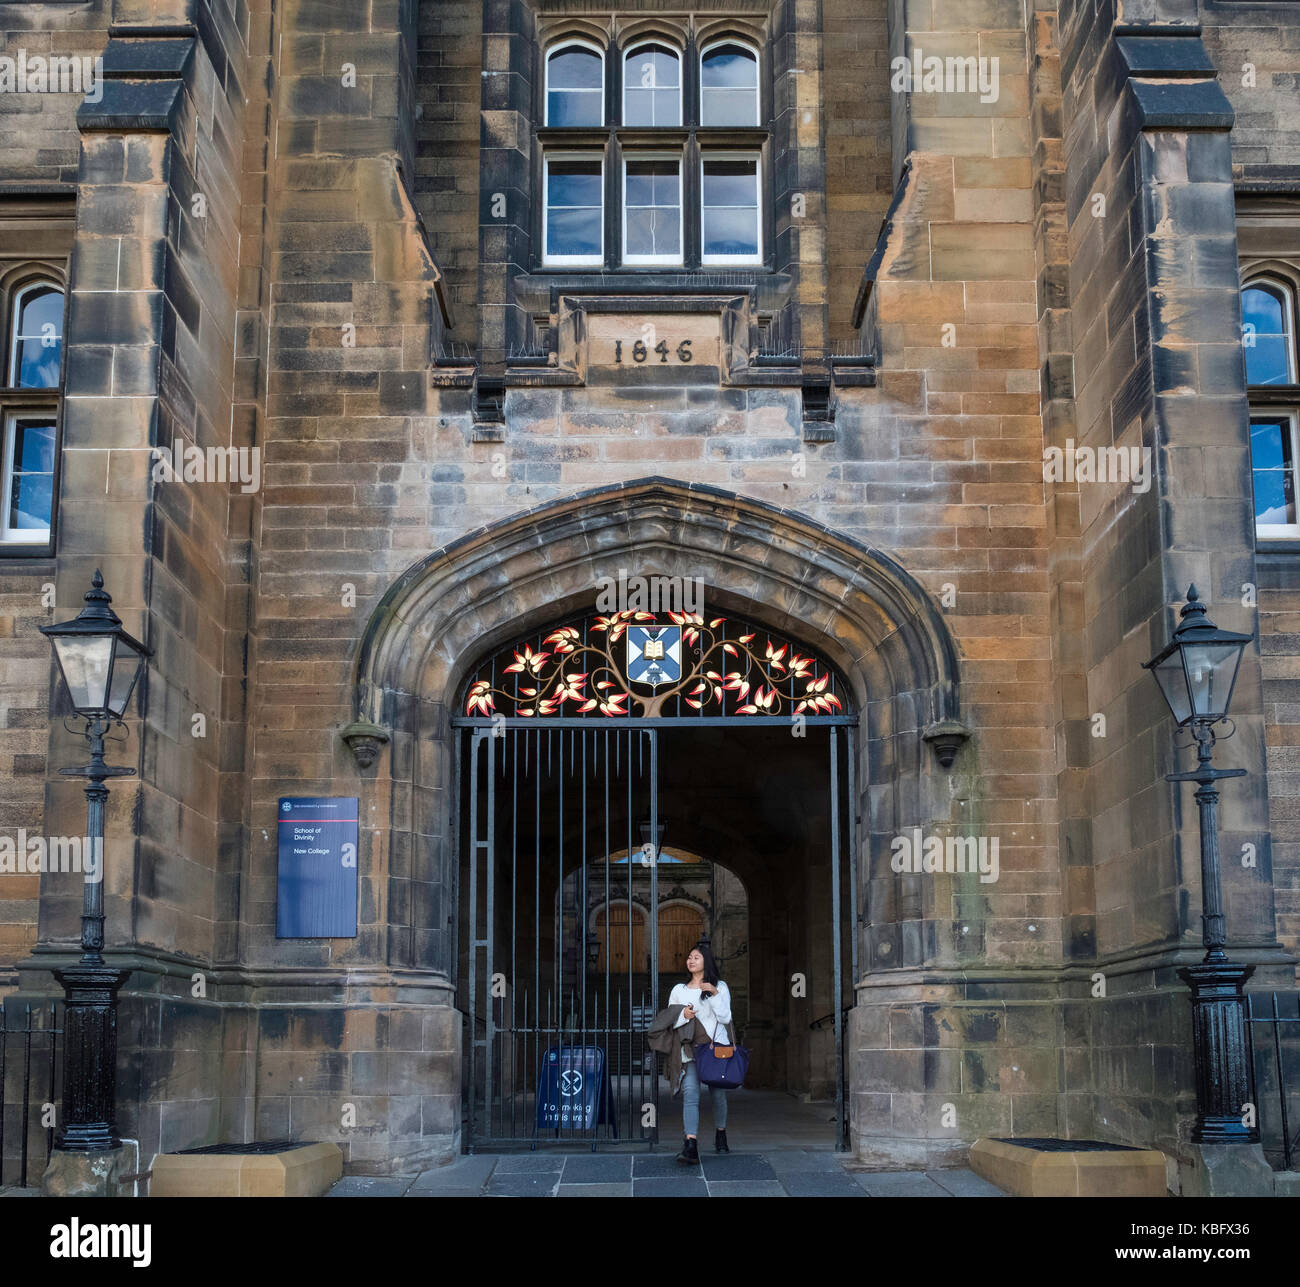 L'extérieur de New college, faculté de théologie à l'université d'Edimbourg sur le monticule à Édimbourg, Écosse, Royaume-Uni. Banque D'Images